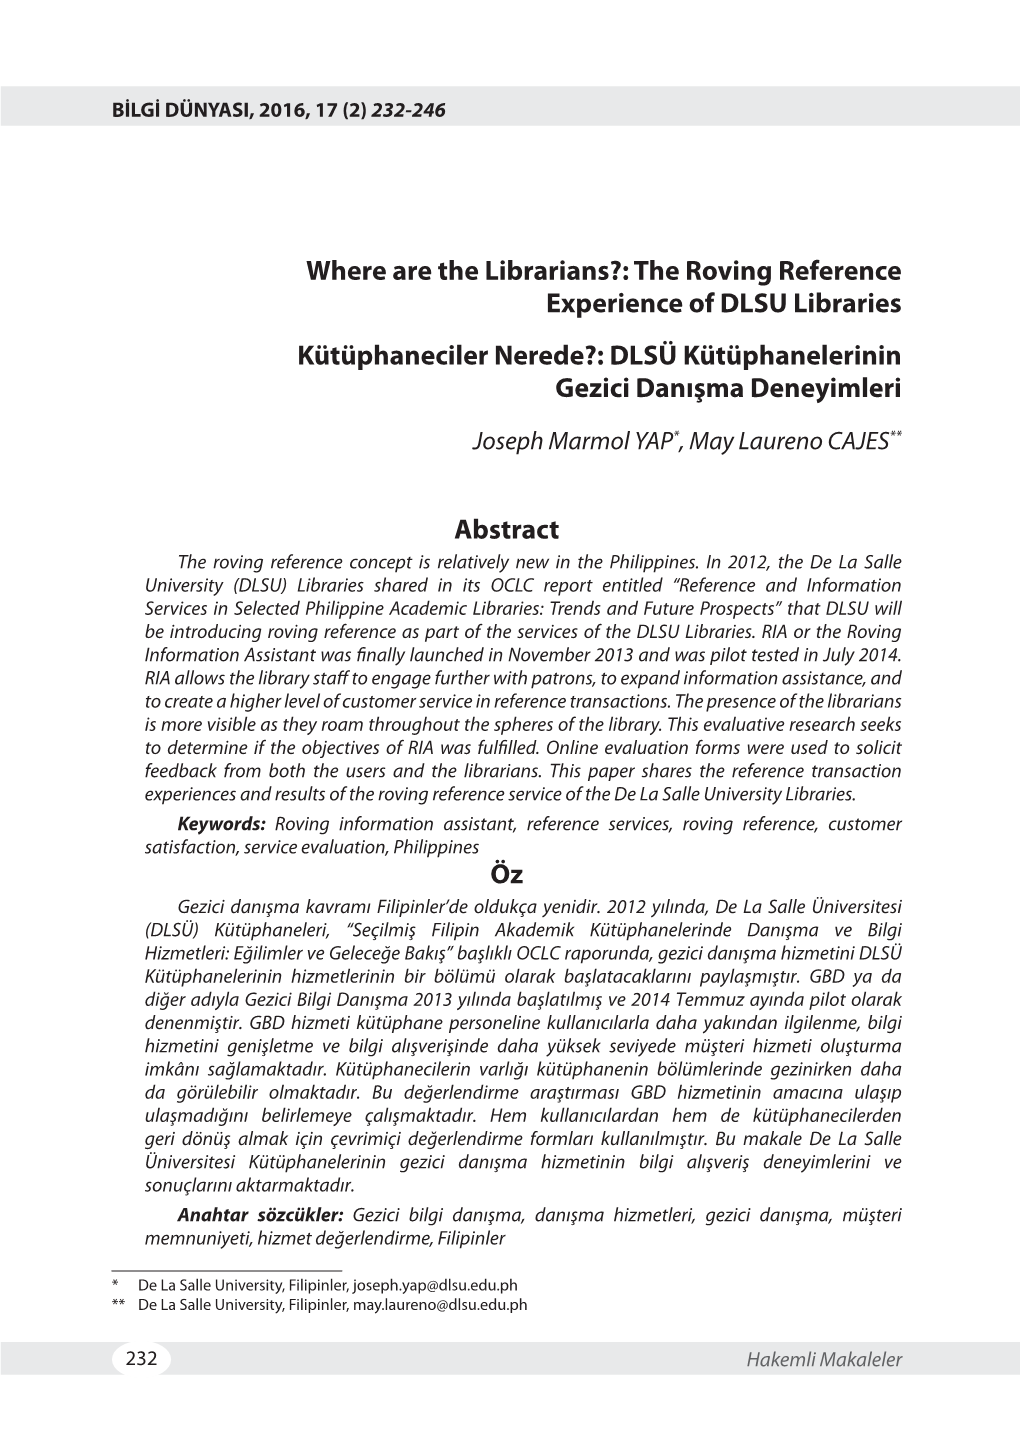 Where Are the Librarians?: the Roving Reference Experience of DLSU Libraries Kütüphaneciler Nerede?: DLSÜ Kütüphanelerinin Gezici Danışma Deneyimleri